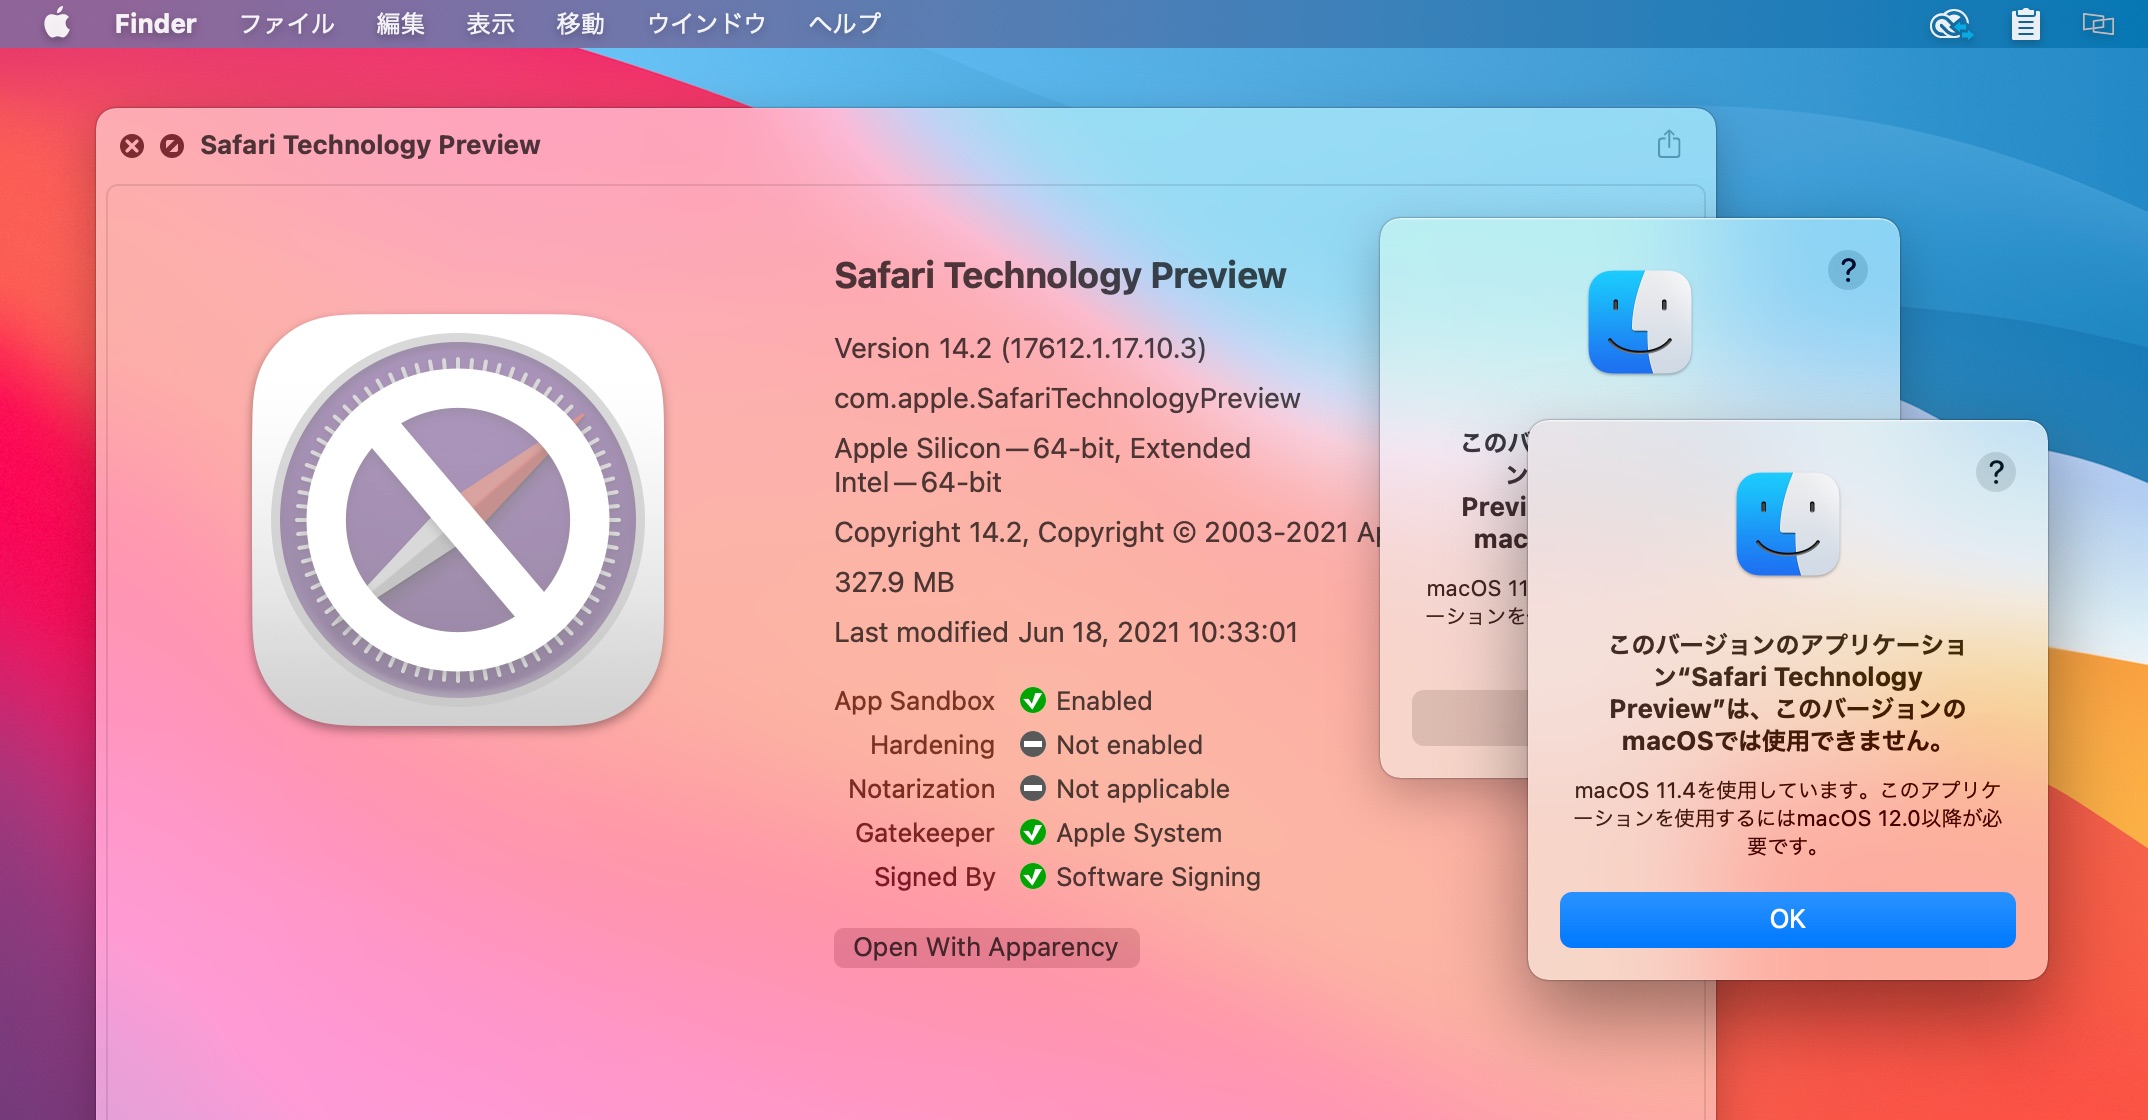 Safari Technology Preview 126